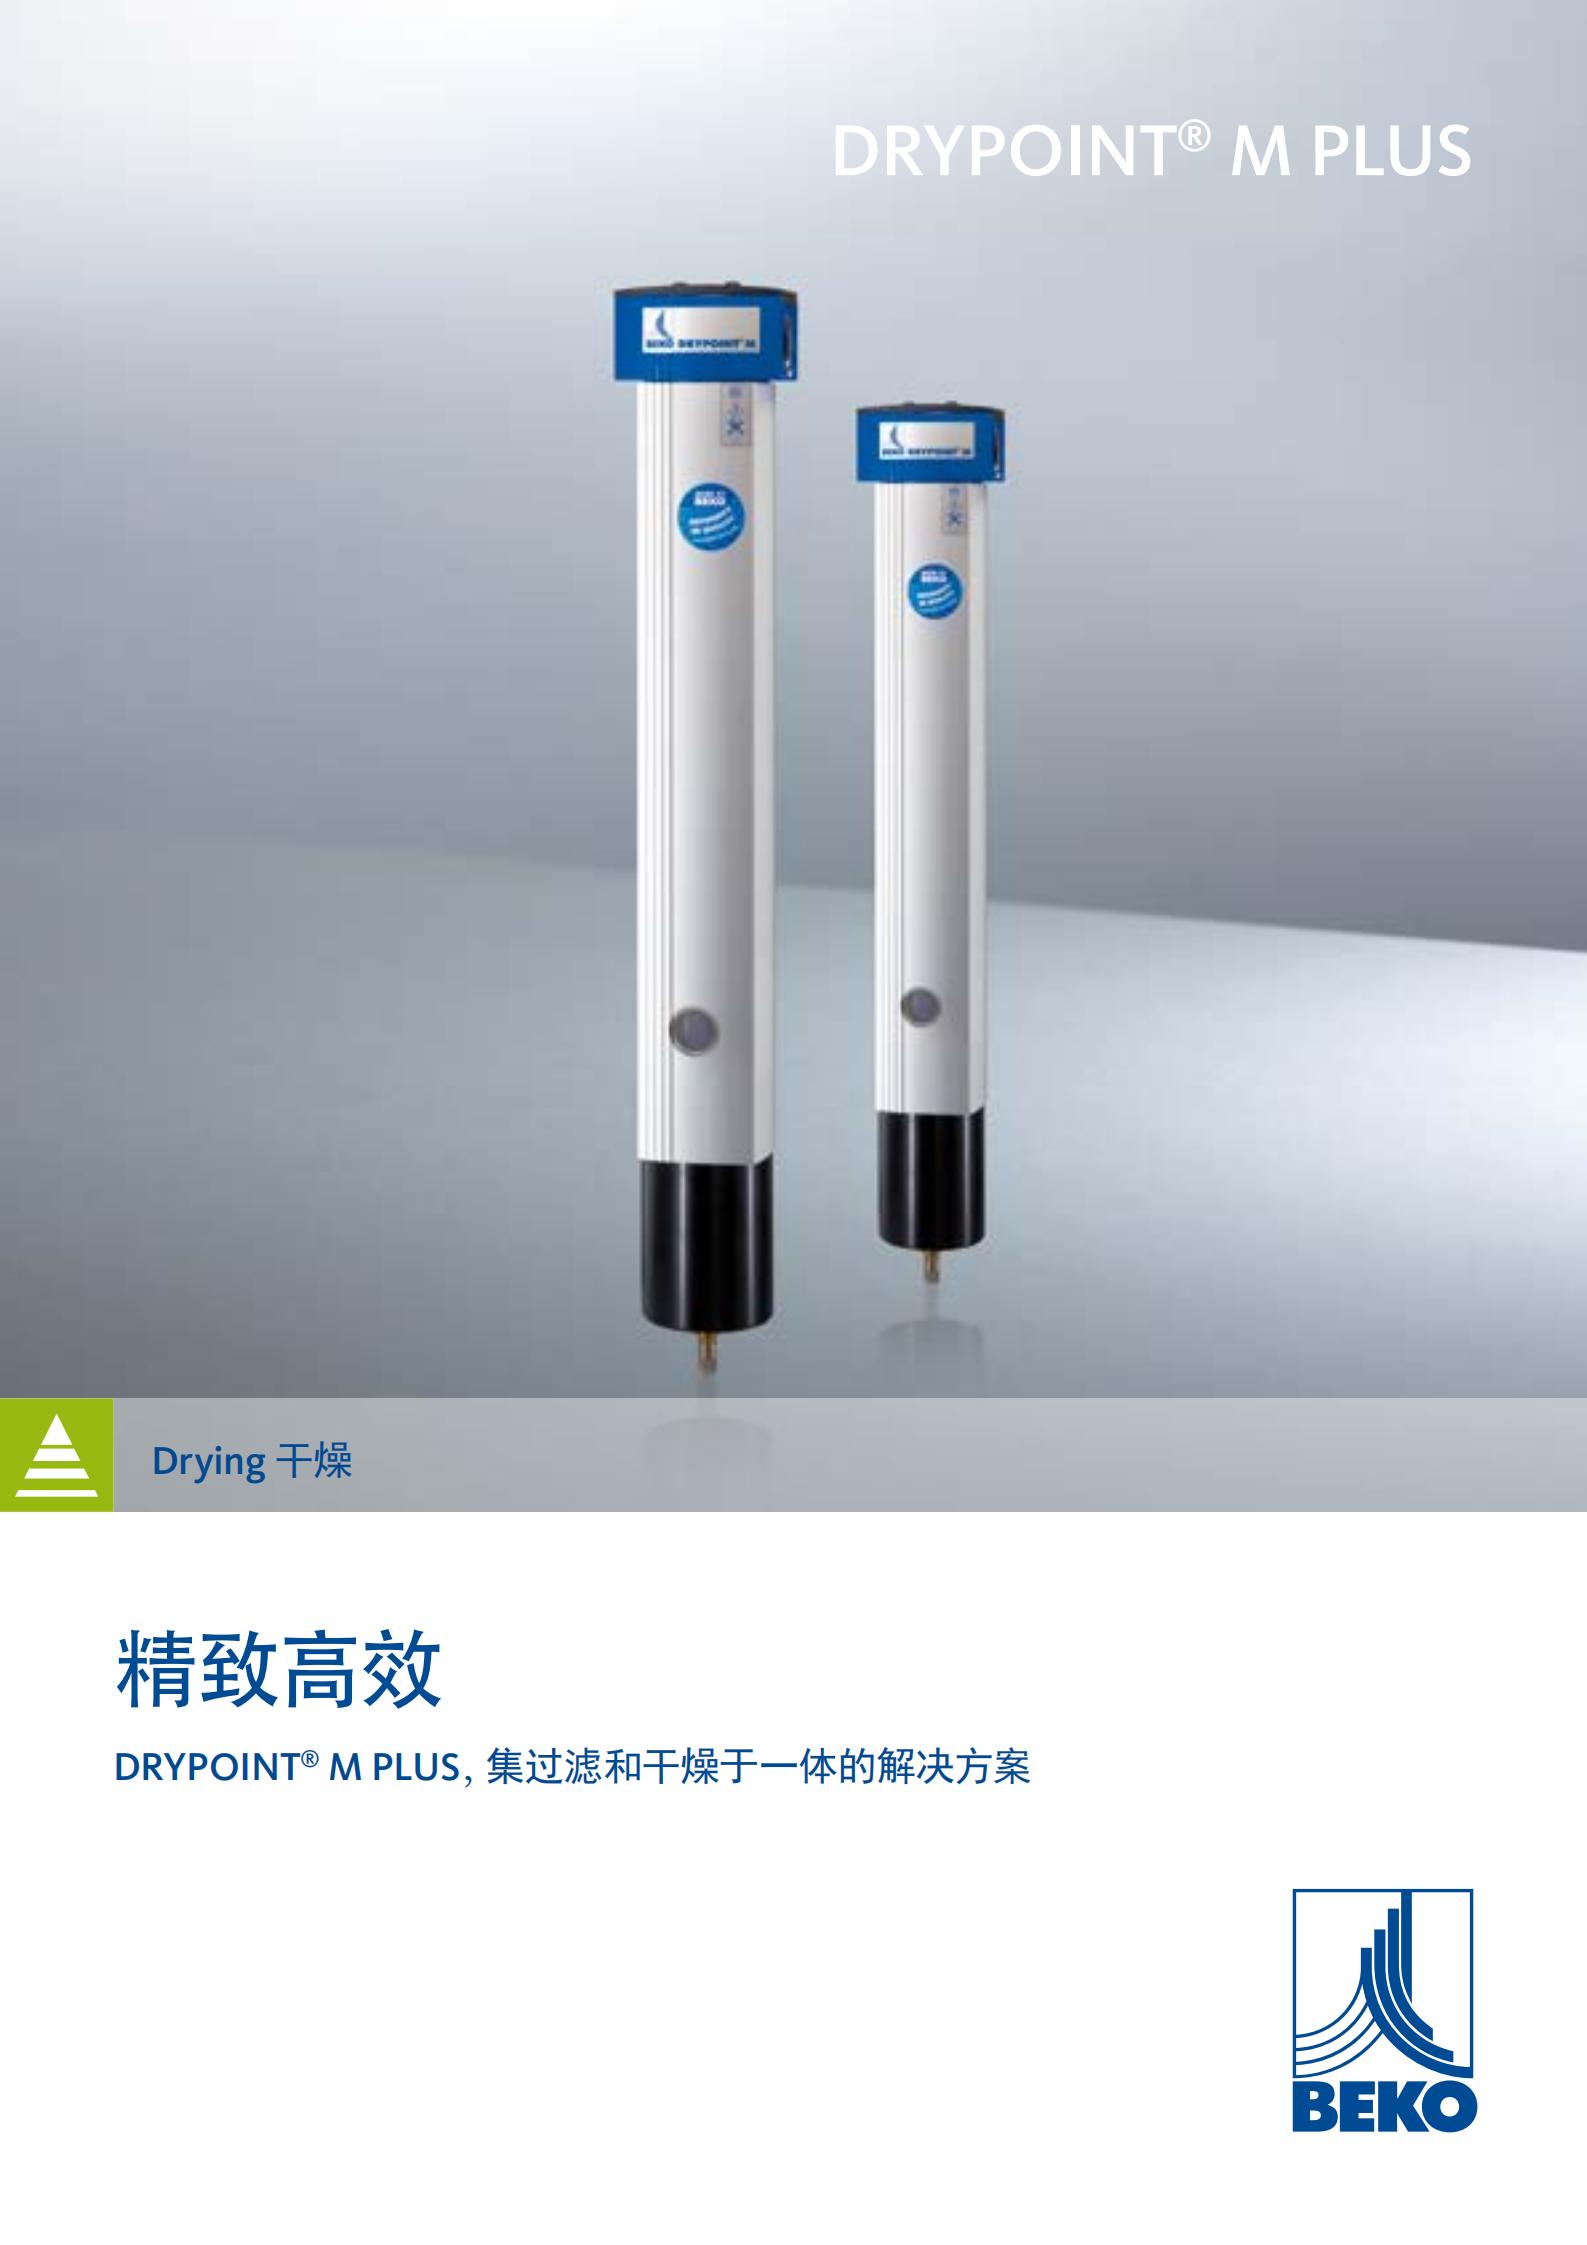 上海市锂电用膜式干燥器DM08G19R厂家供应德国BEKO锂电用膜式干燥器DM08G19RA系列进口